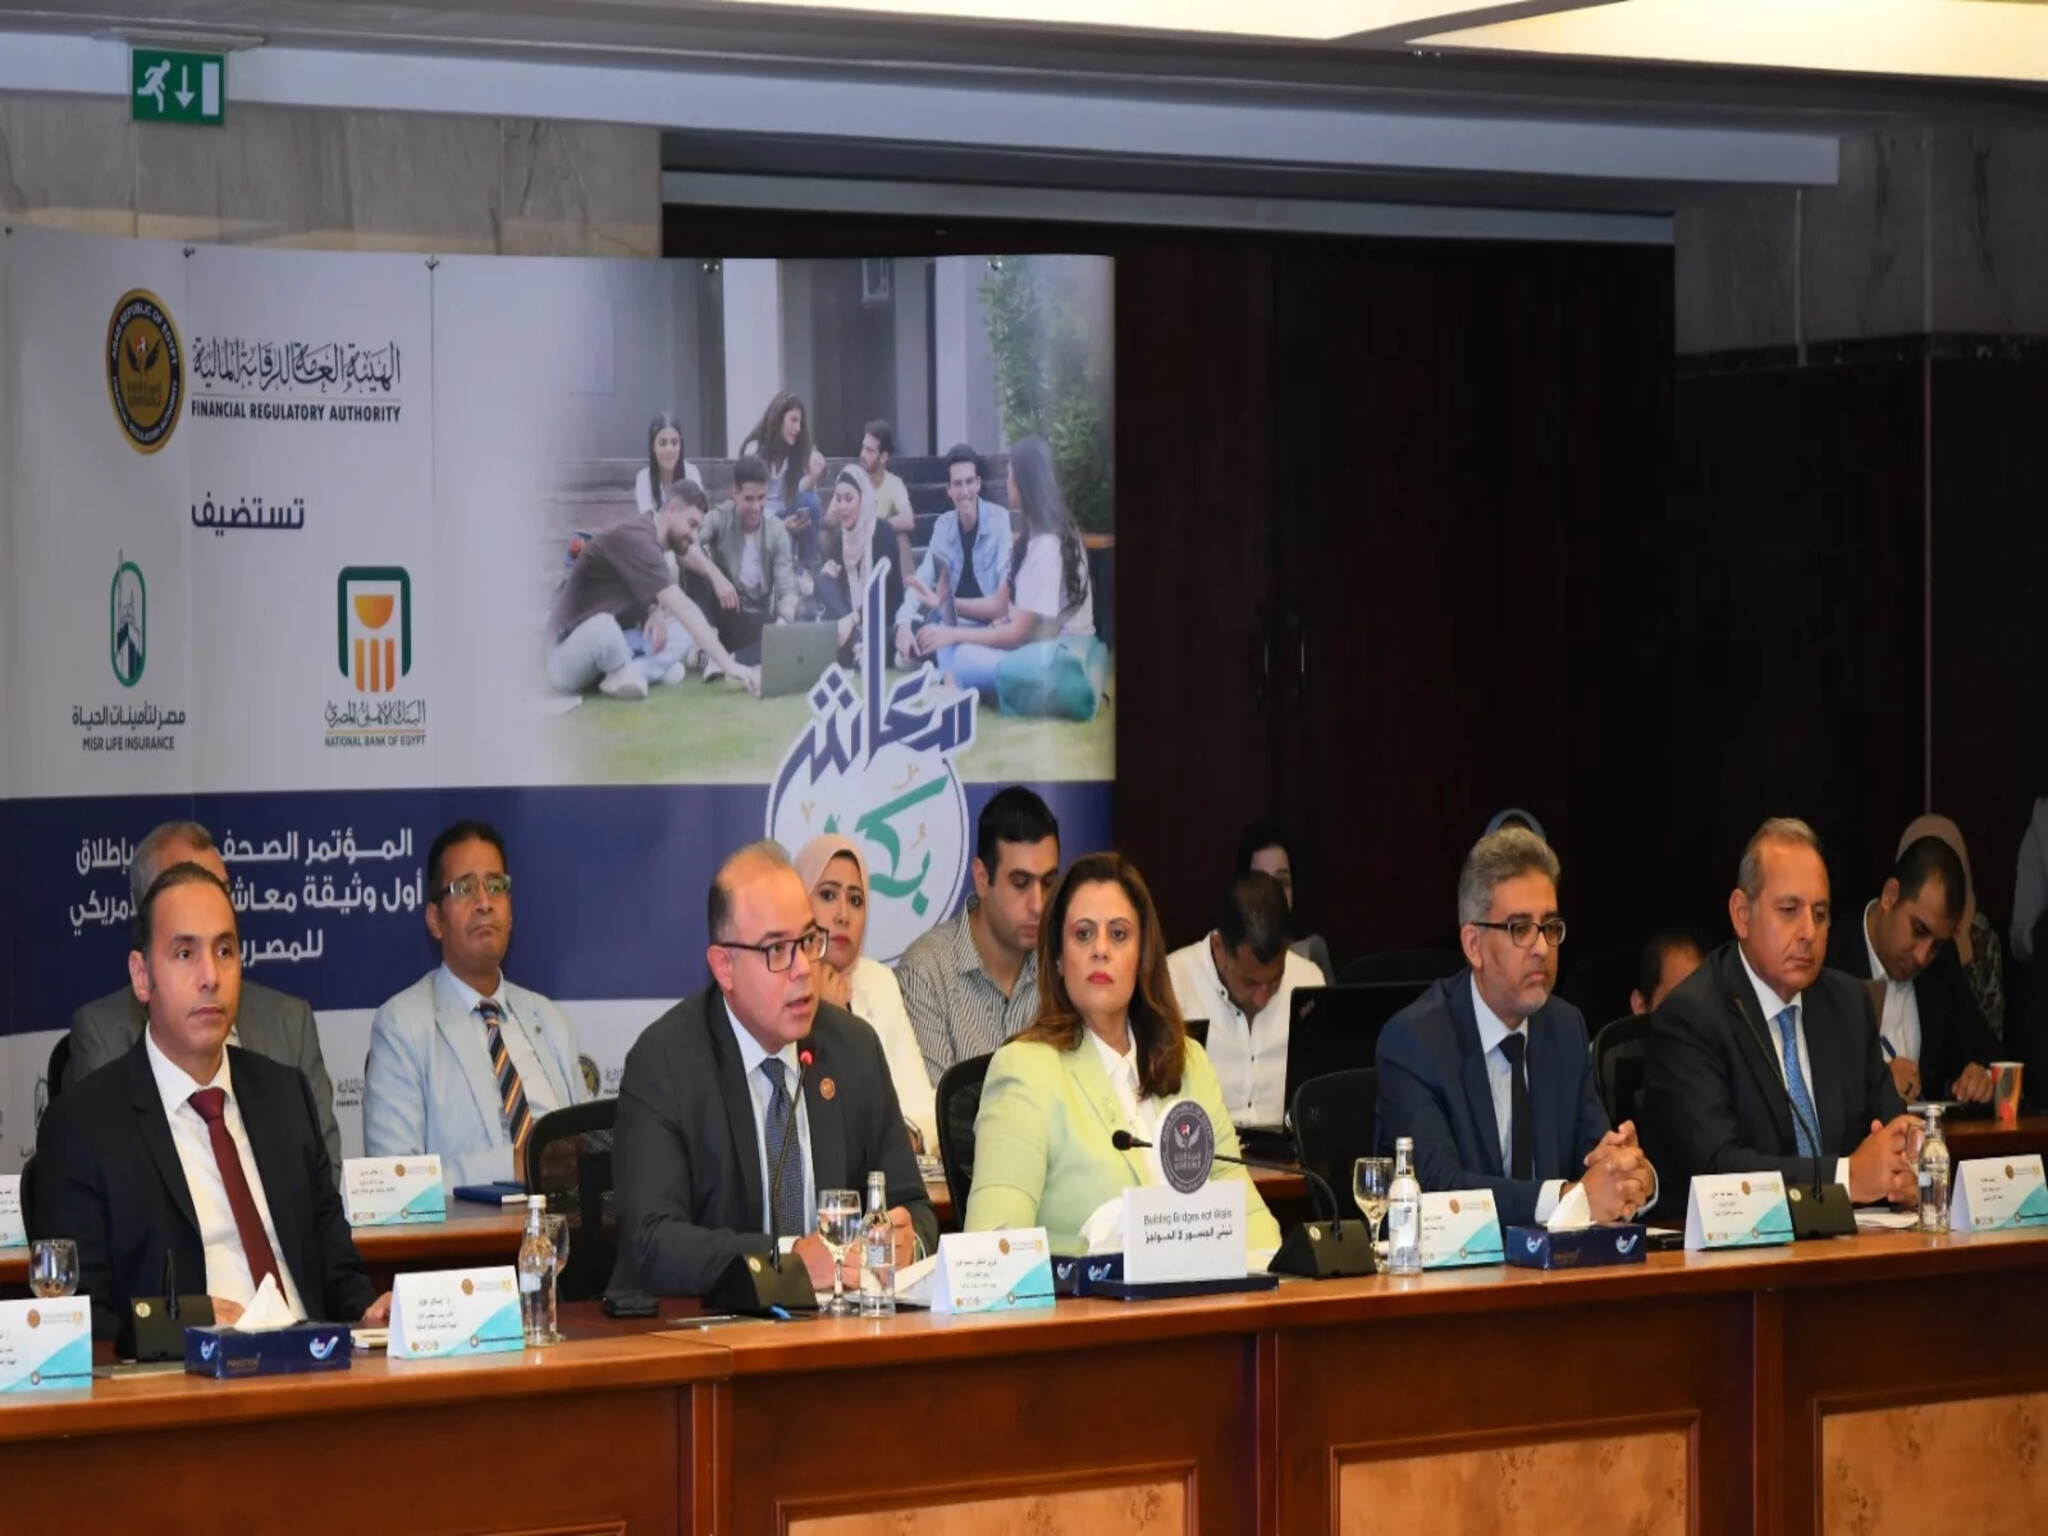 وزارة الدولة للهجرة وشؤون المصريين تطلق أول وثيقة معاش بالدولار